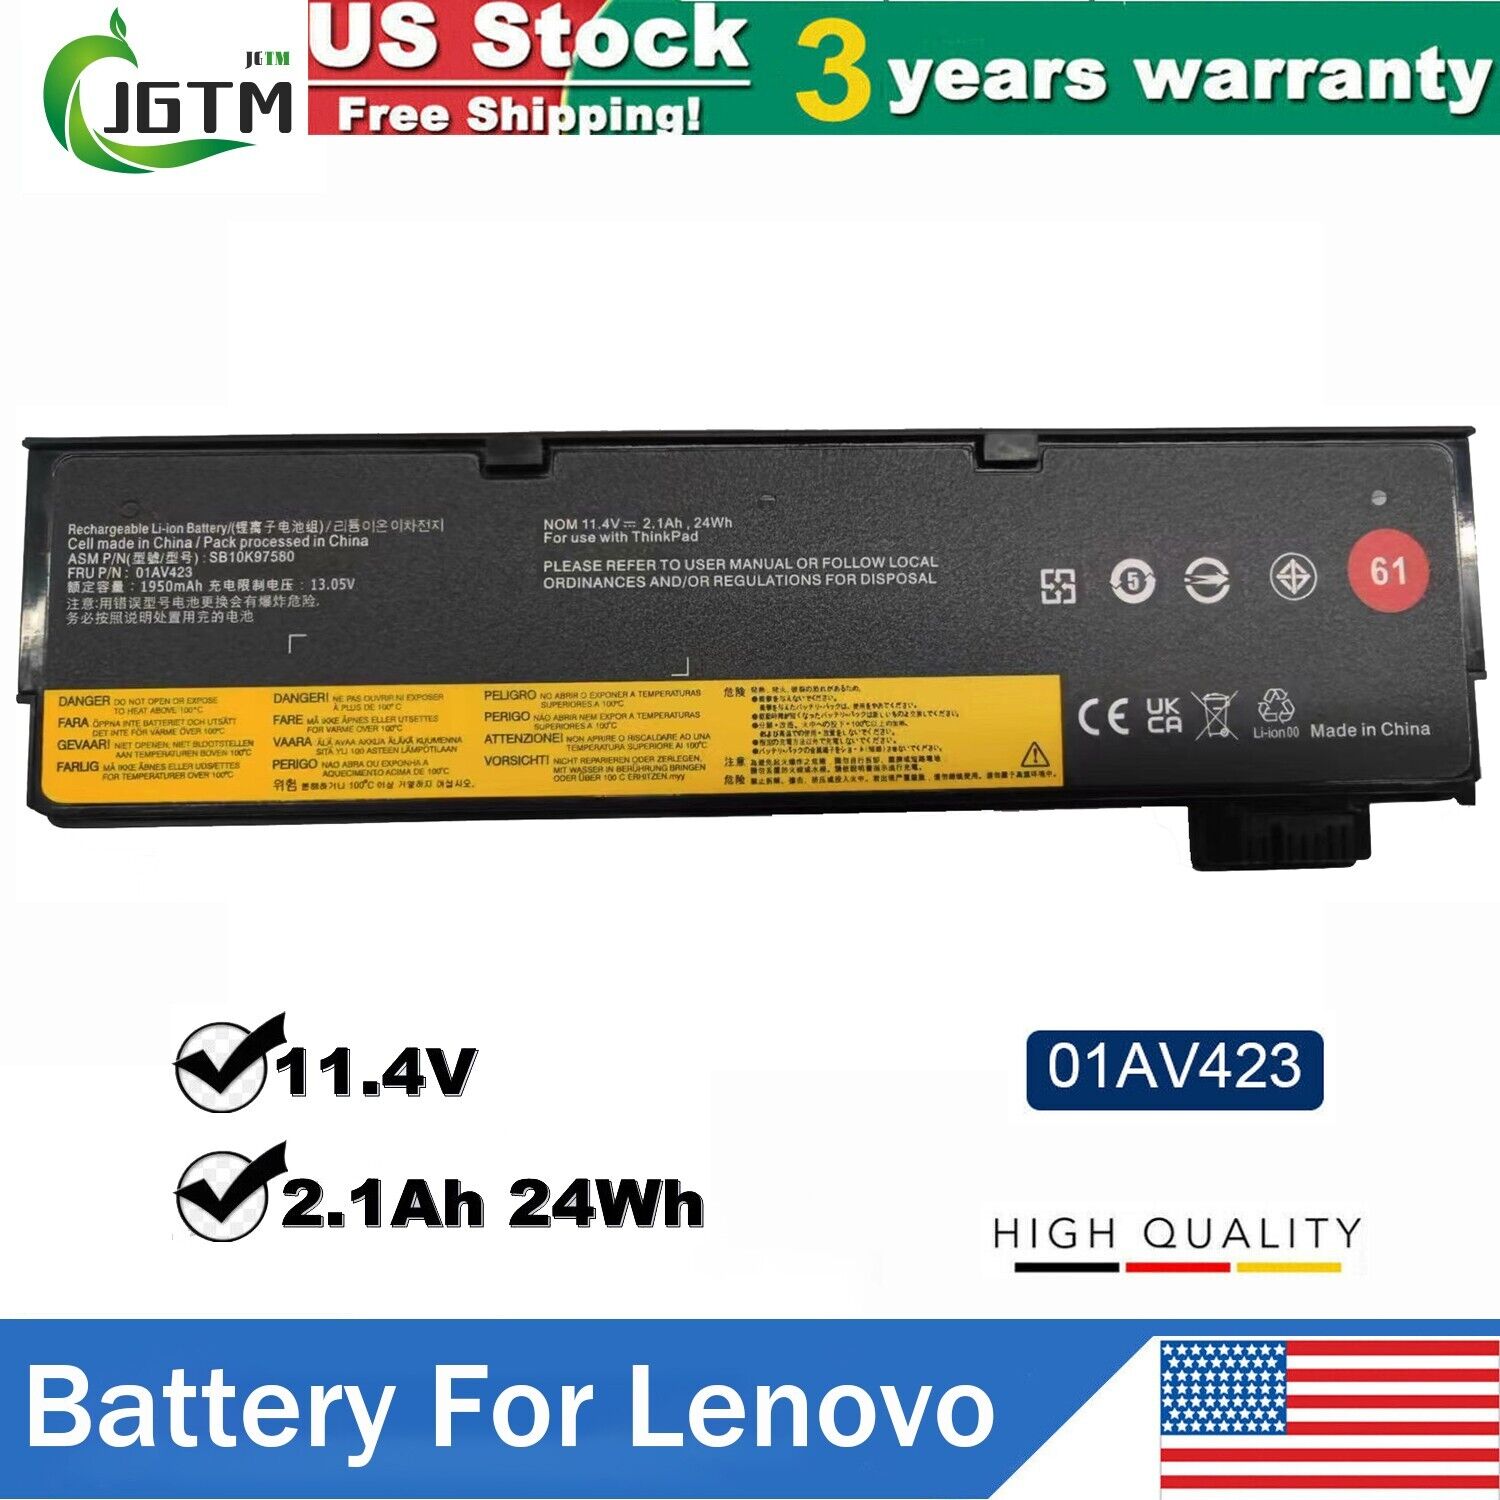 61 01AV423 Battery Lenovo Thinkpad T470 T480 T570 T580 P51s P52s 24Wh 11.4V US